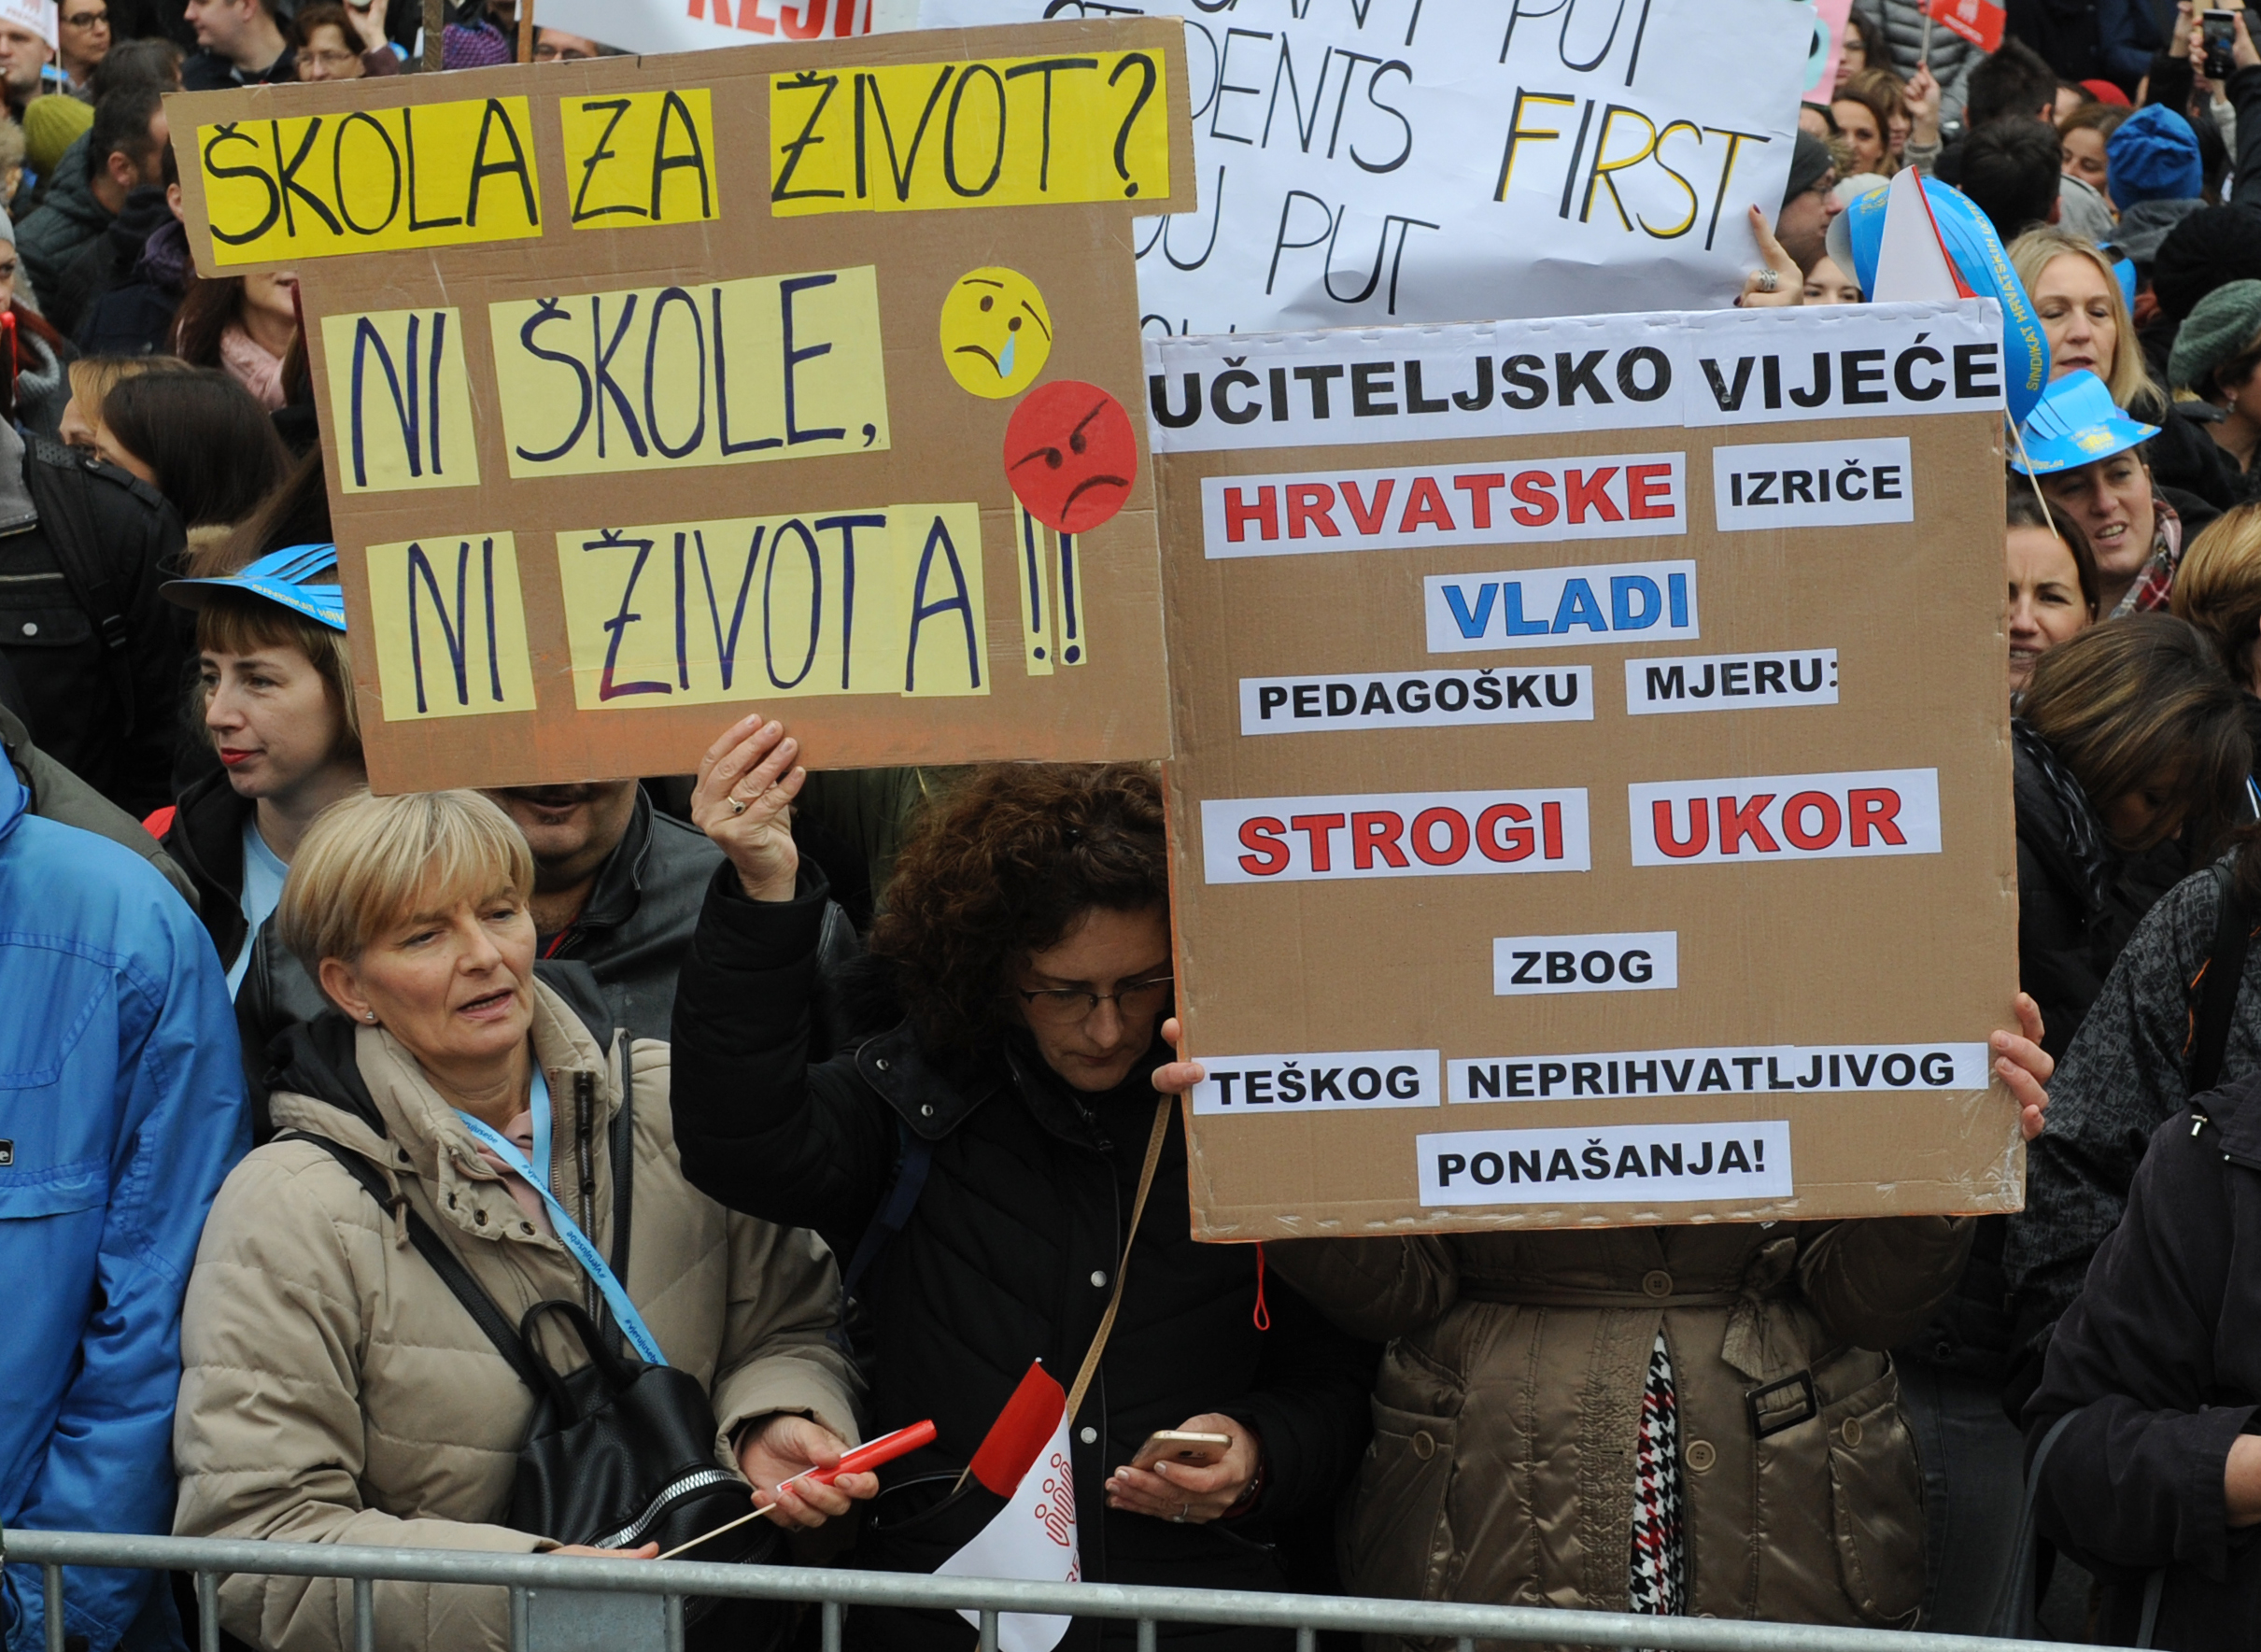 Prosvjed nastavnika u Zagrebu / Snimio Darko JELINEK